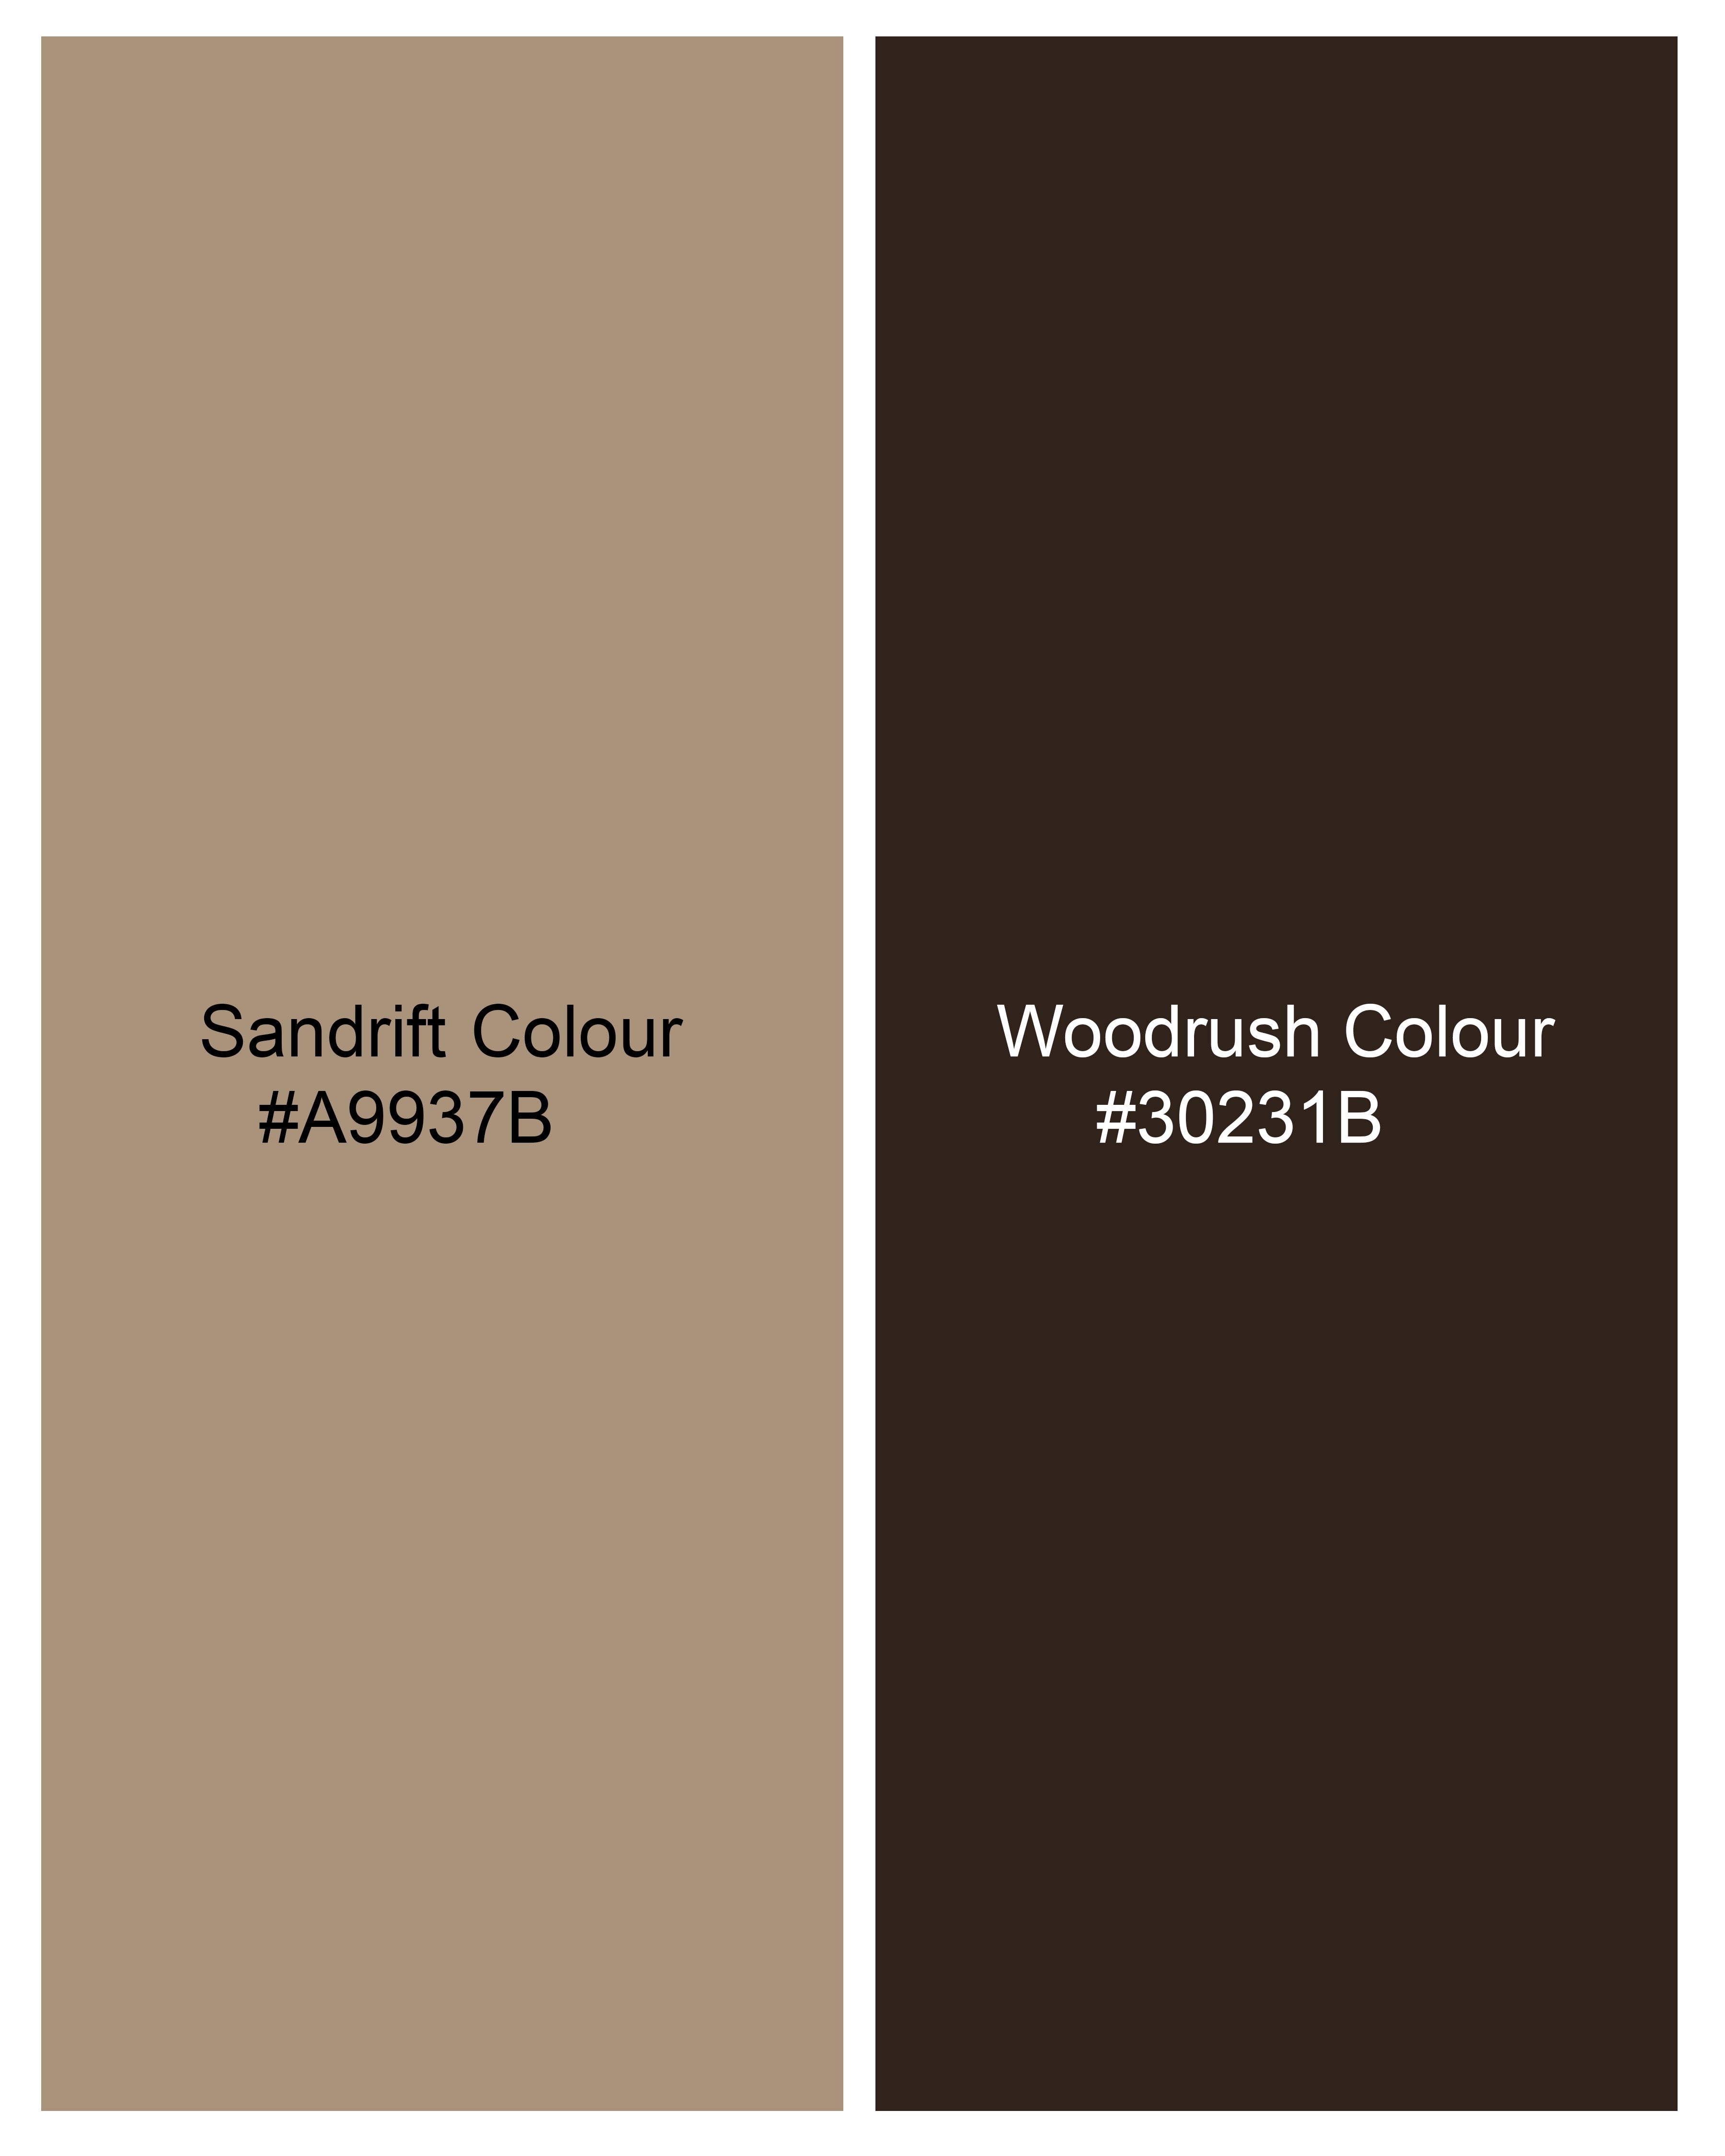 Sandrift and Woodrush Brown Zebra Printed Viscose Pants